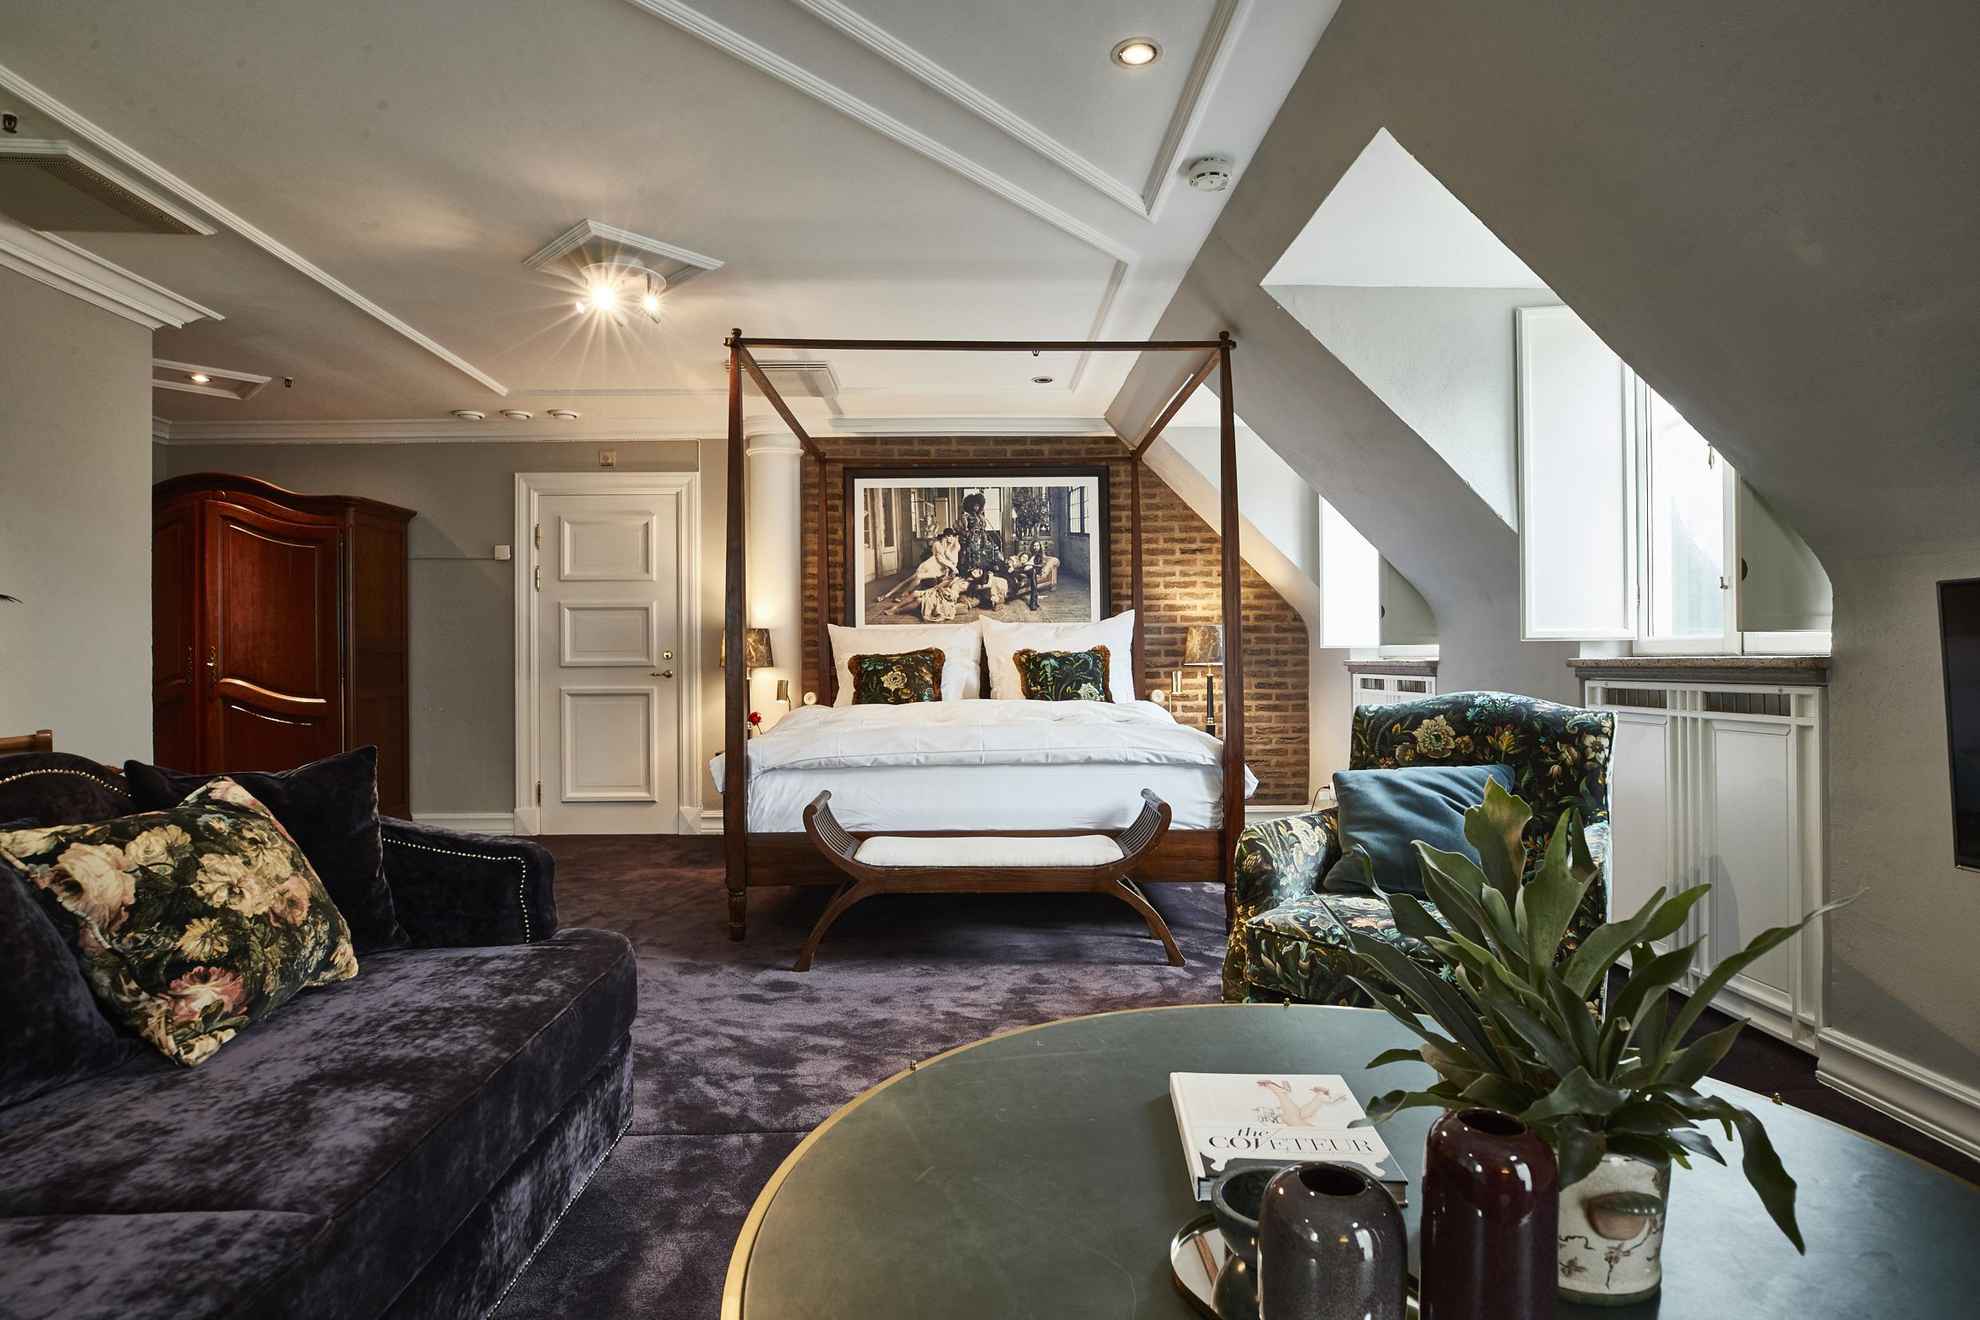 Une grande chambre d'hôtel avec de la moquette, un canapé en velours, une table basse verte, un lit double et une armoire en bois.